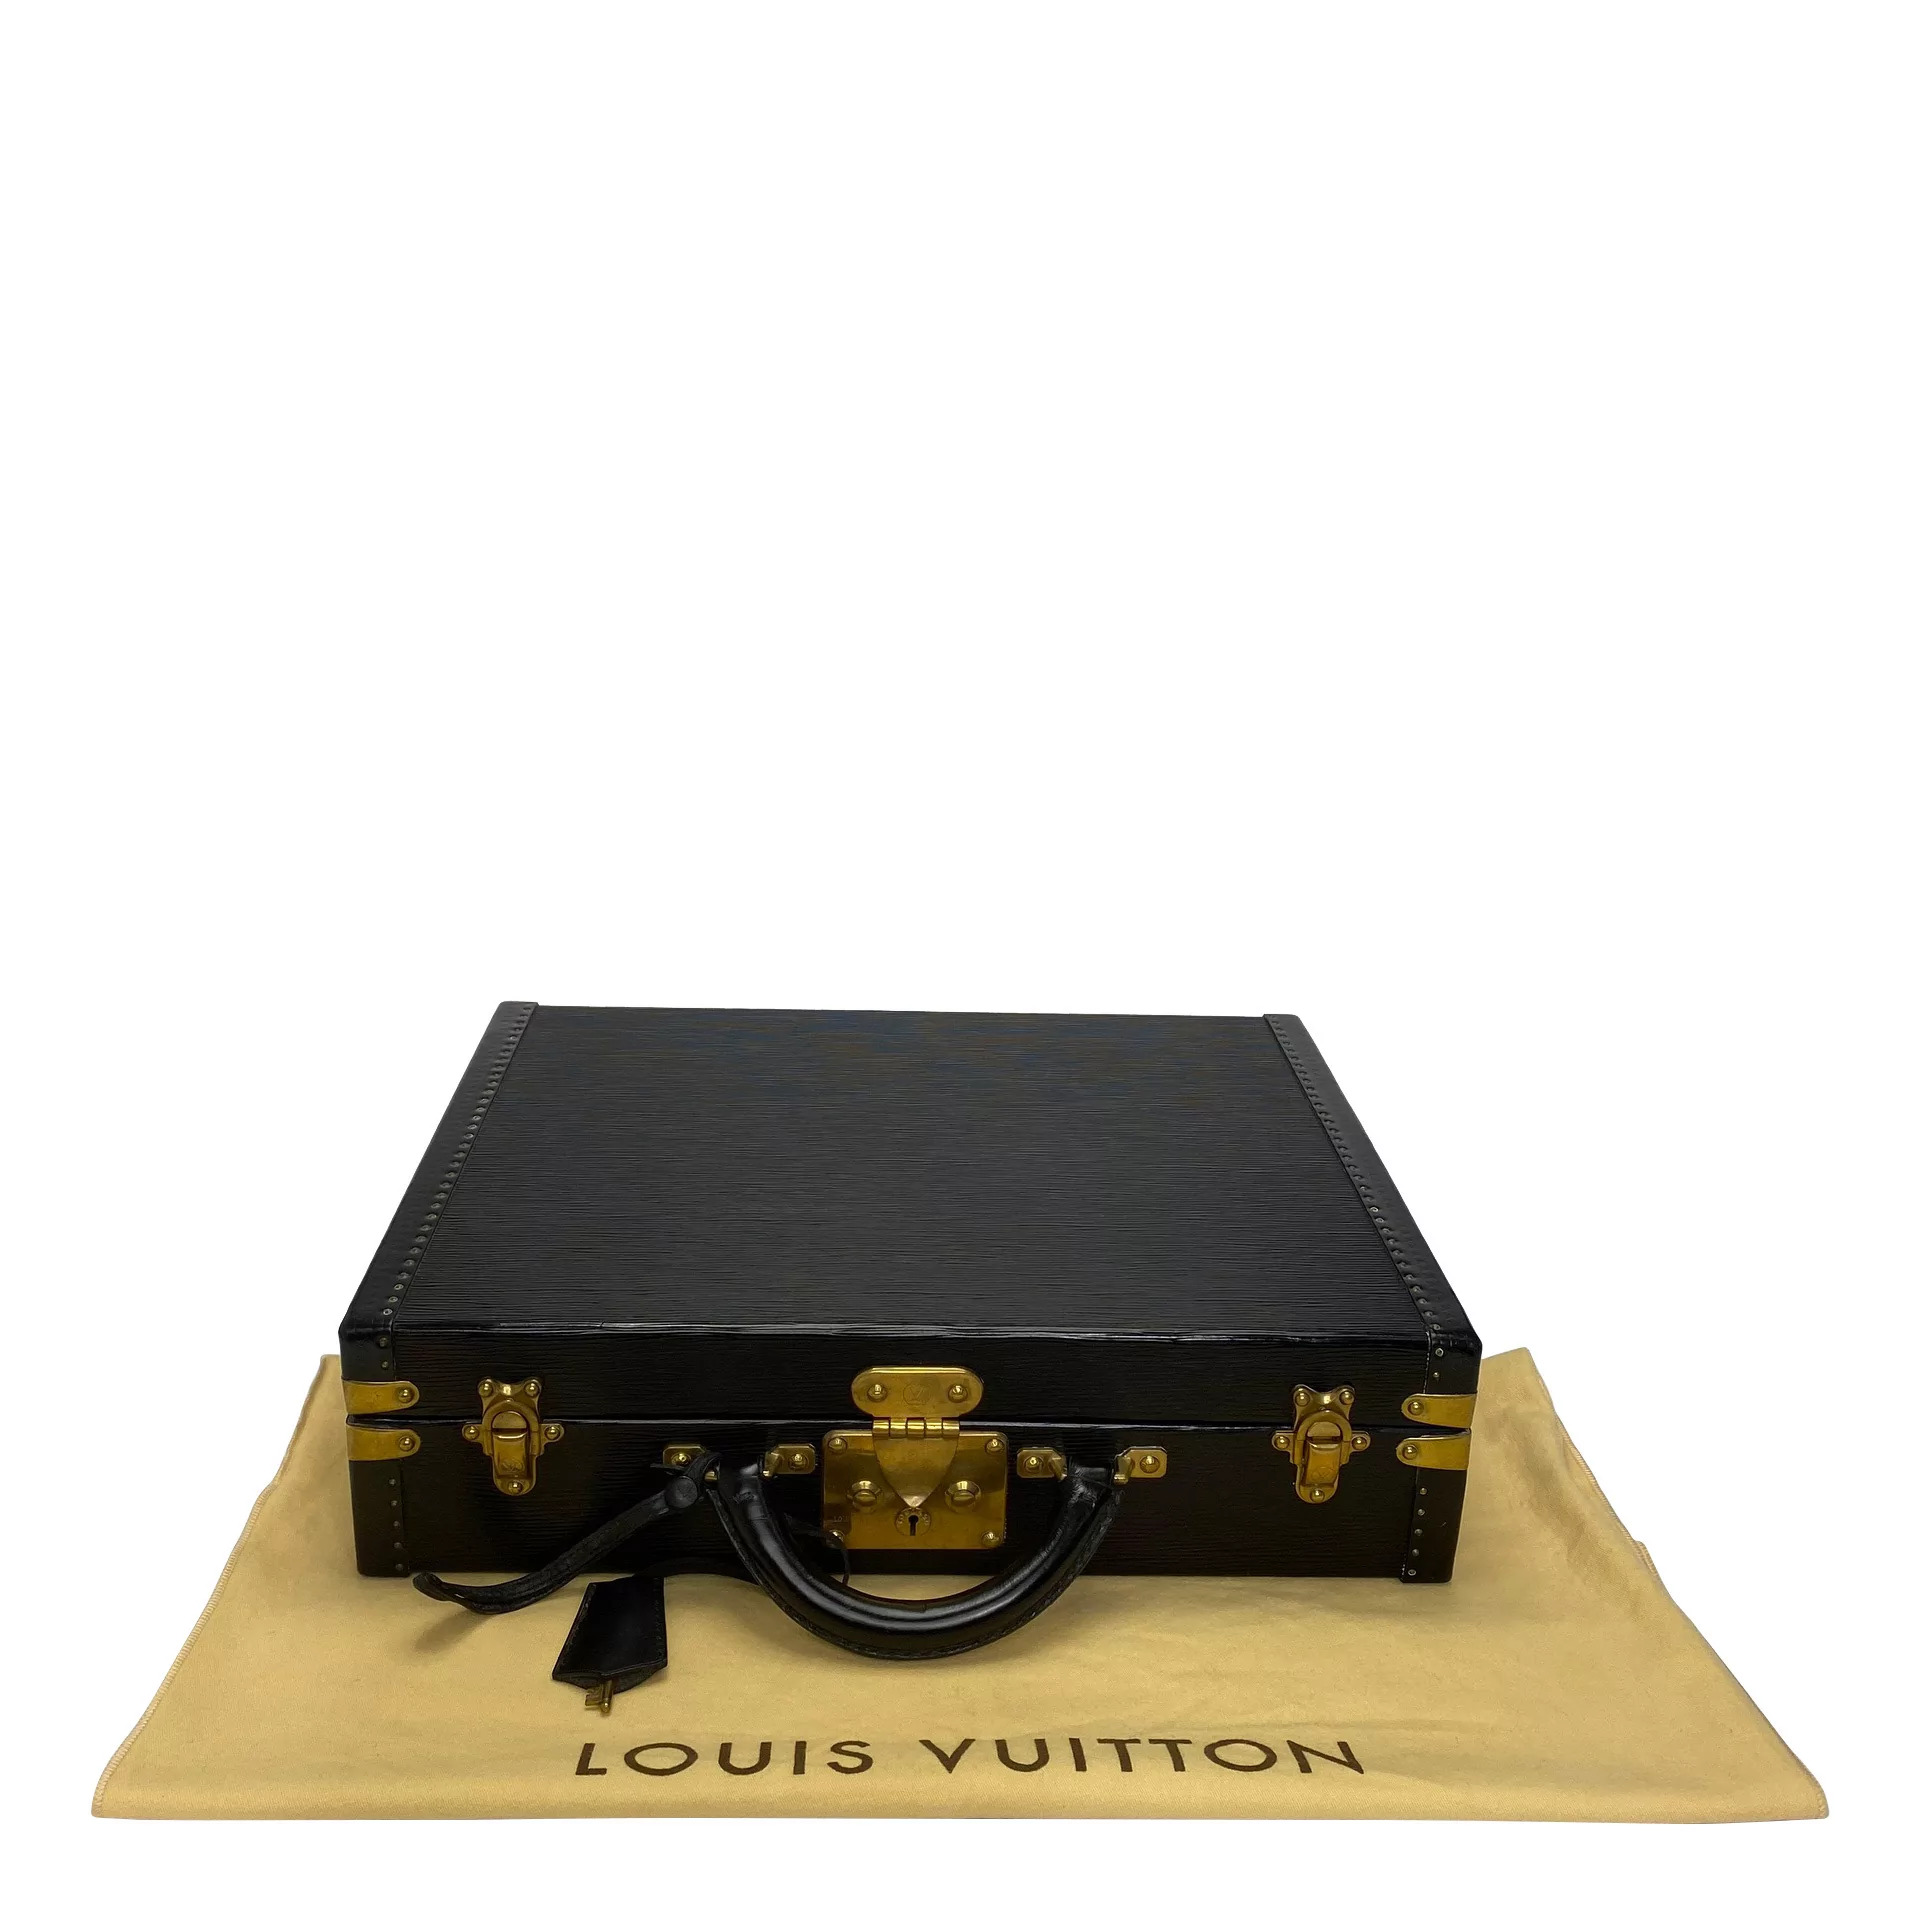 Louis Vuitton inaugura mais um café junto de nova loja na Itália! -  Etiqueta Unica